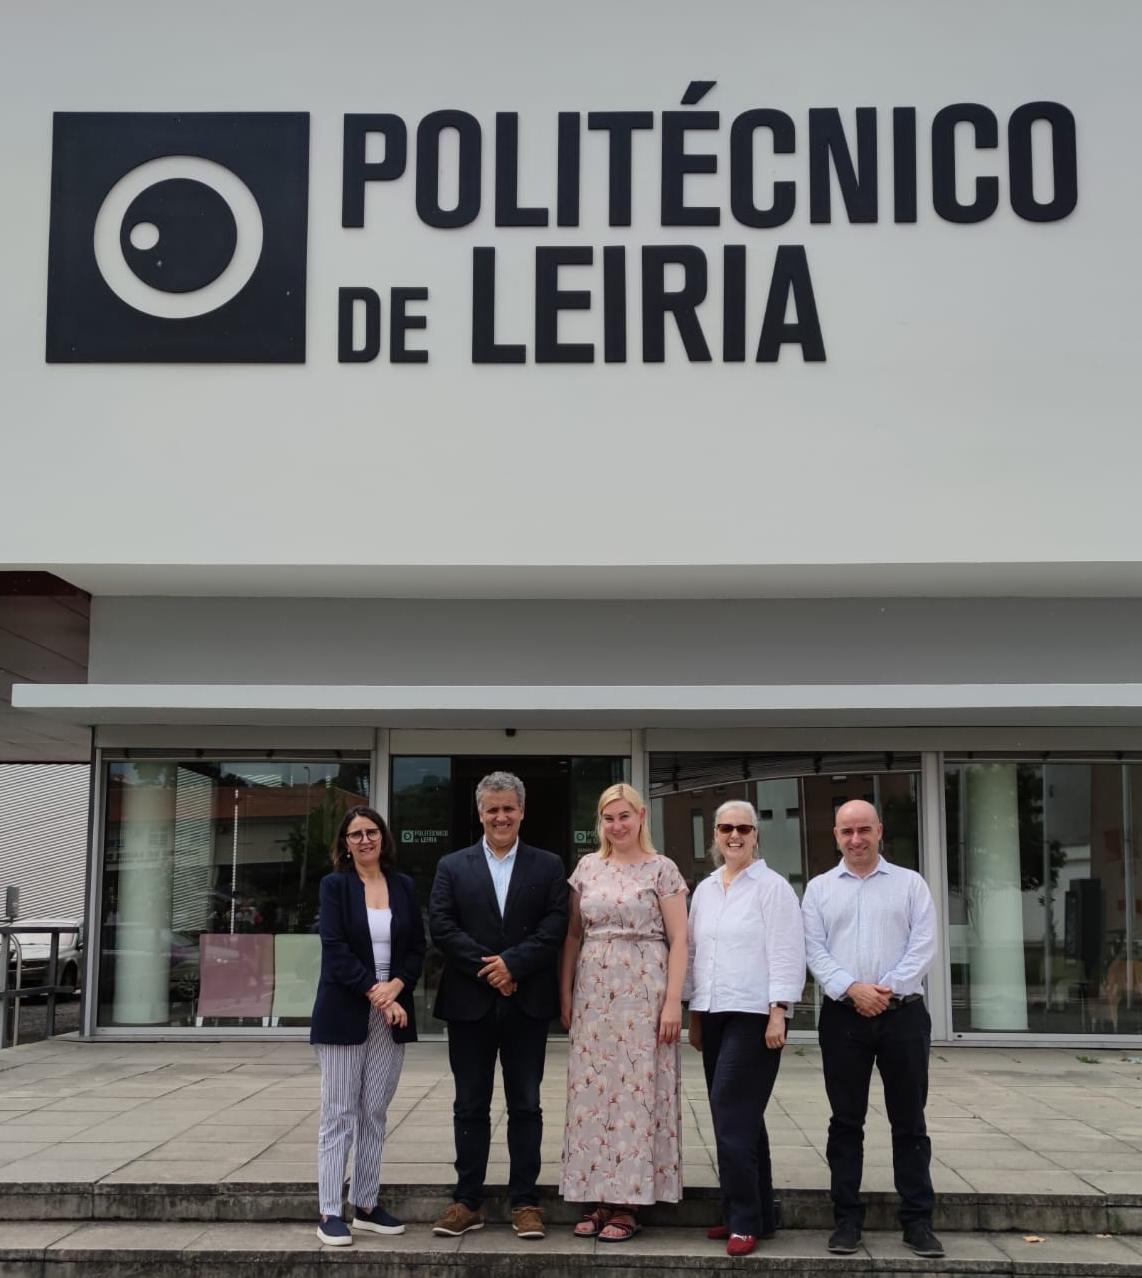 Факультет міжнародних відносин продовжує співпрацю з Політехнічним інститутом м. Лейрія (Португалія)